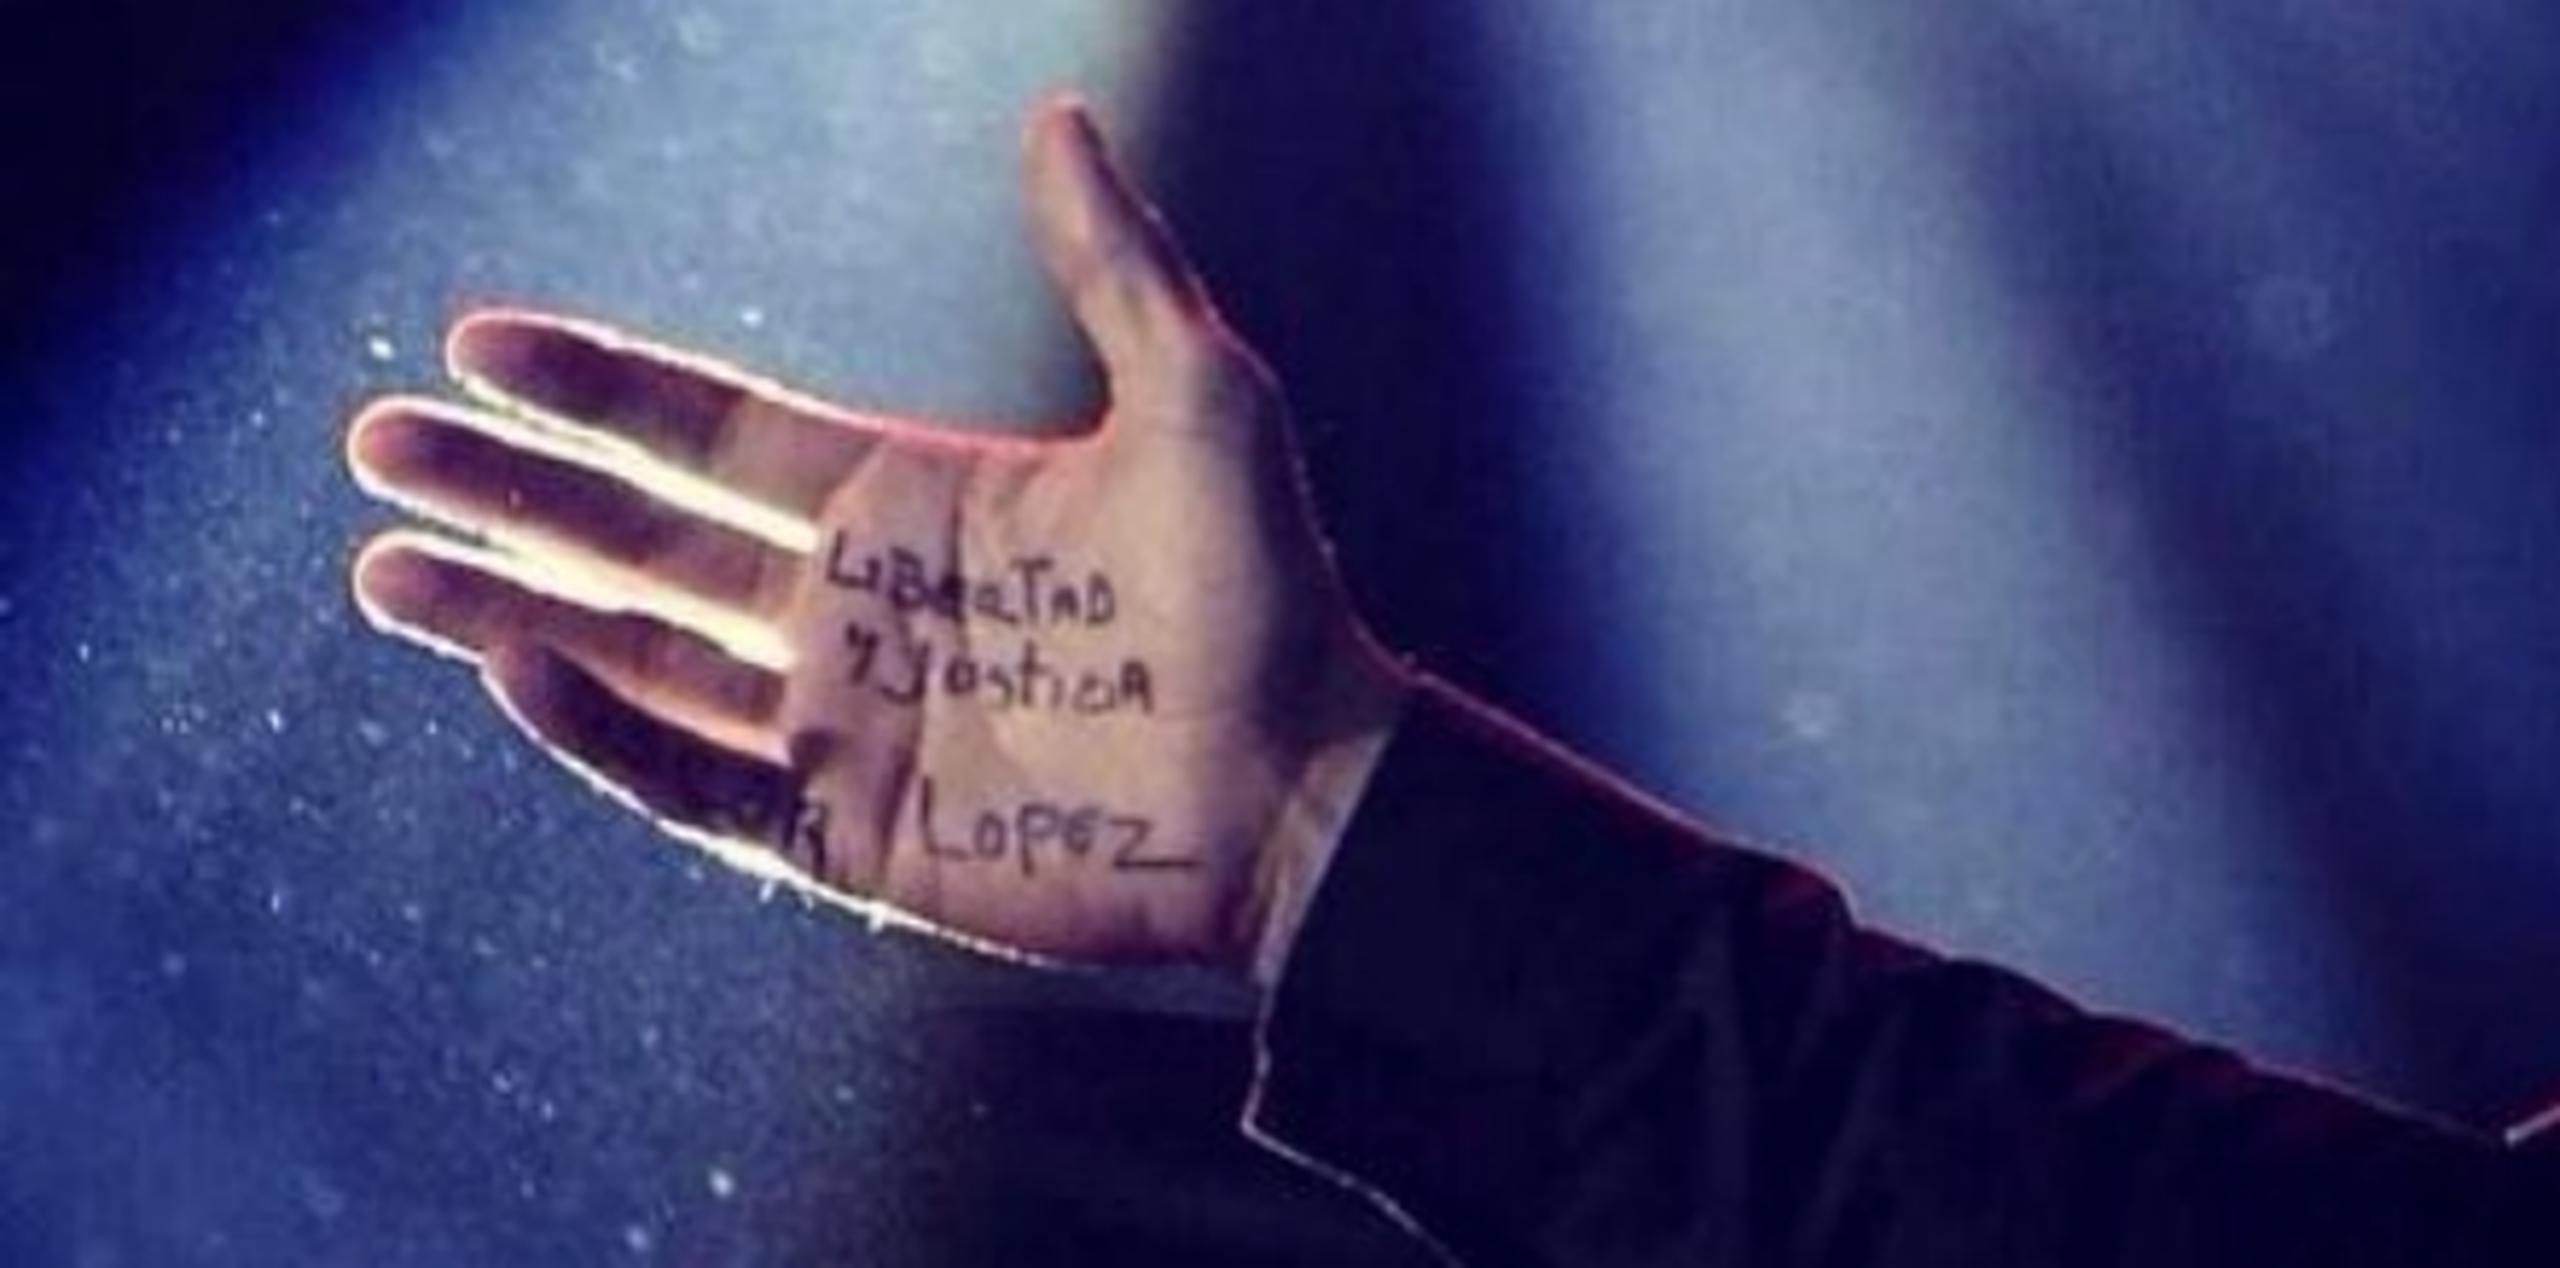 La firma de relaciones públicas de Ricky Martin, Perfect Partners, compartió la fotografía  en la que curiosamente, la mano del artista se ve iluminada, añadiéndole dramatismo y emotividad a la imagen. (Suministrada)